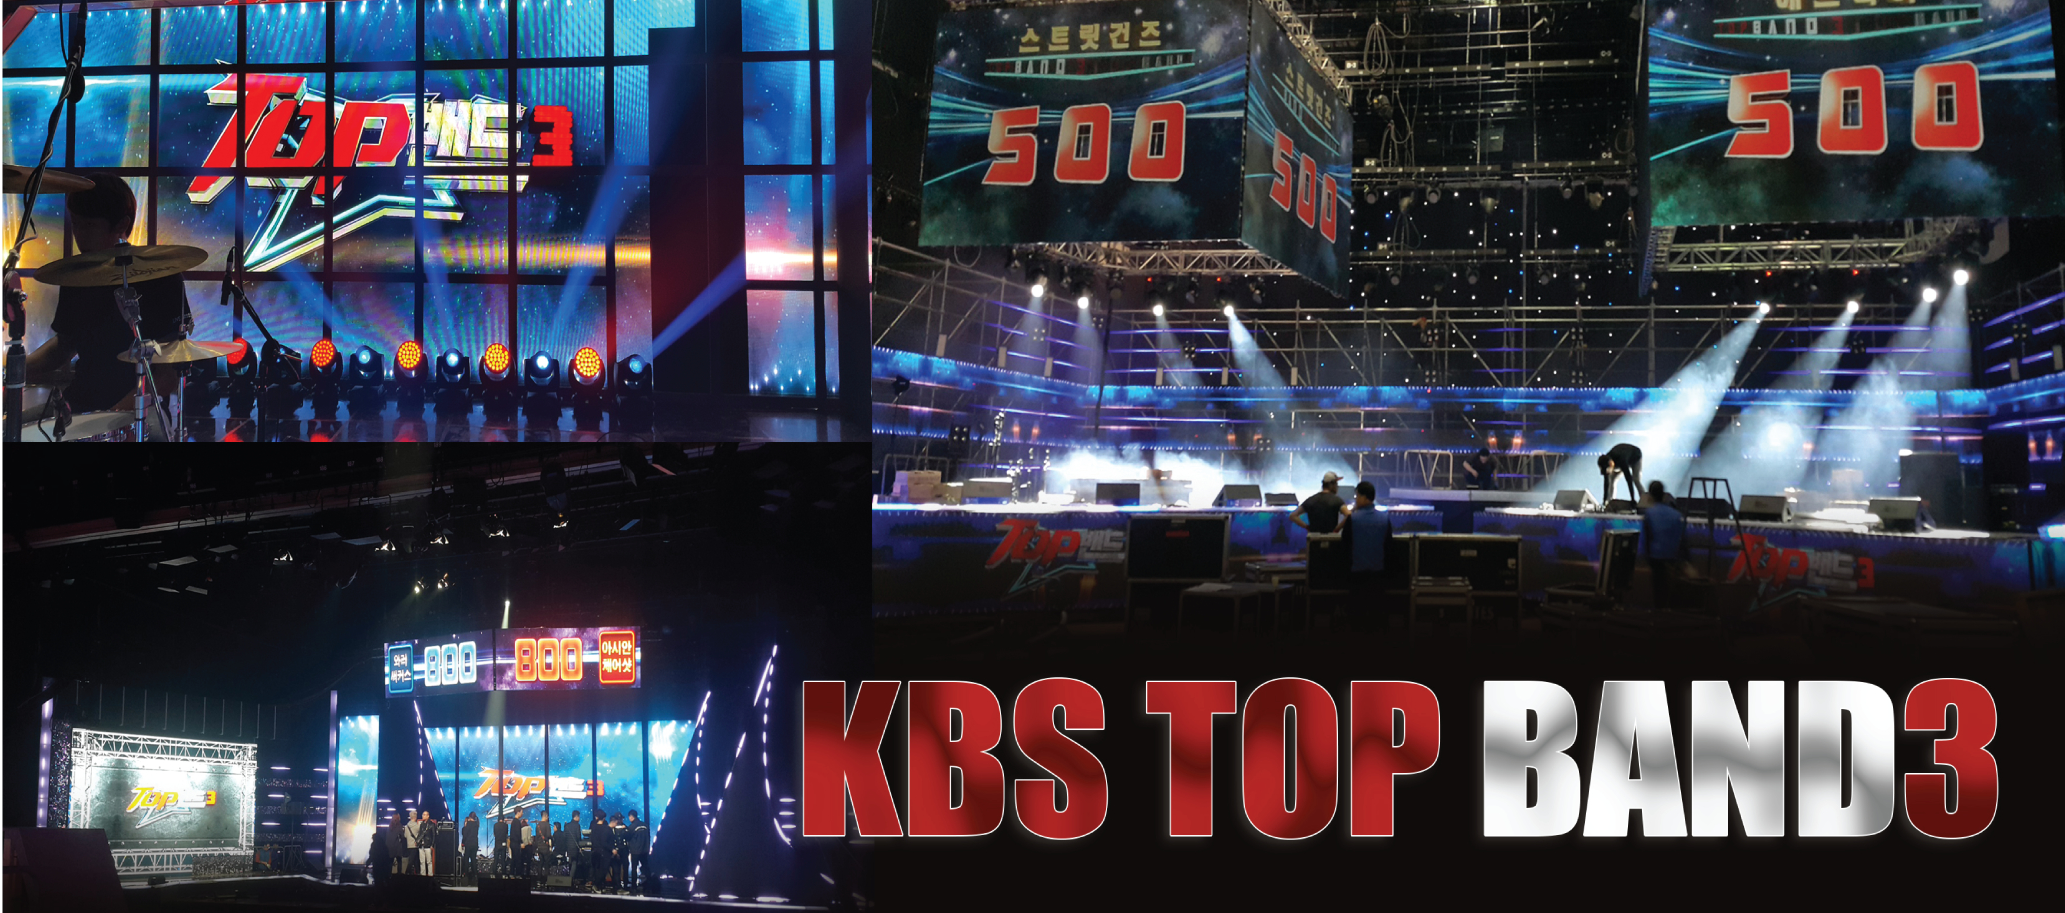 KBS TOP BAND3